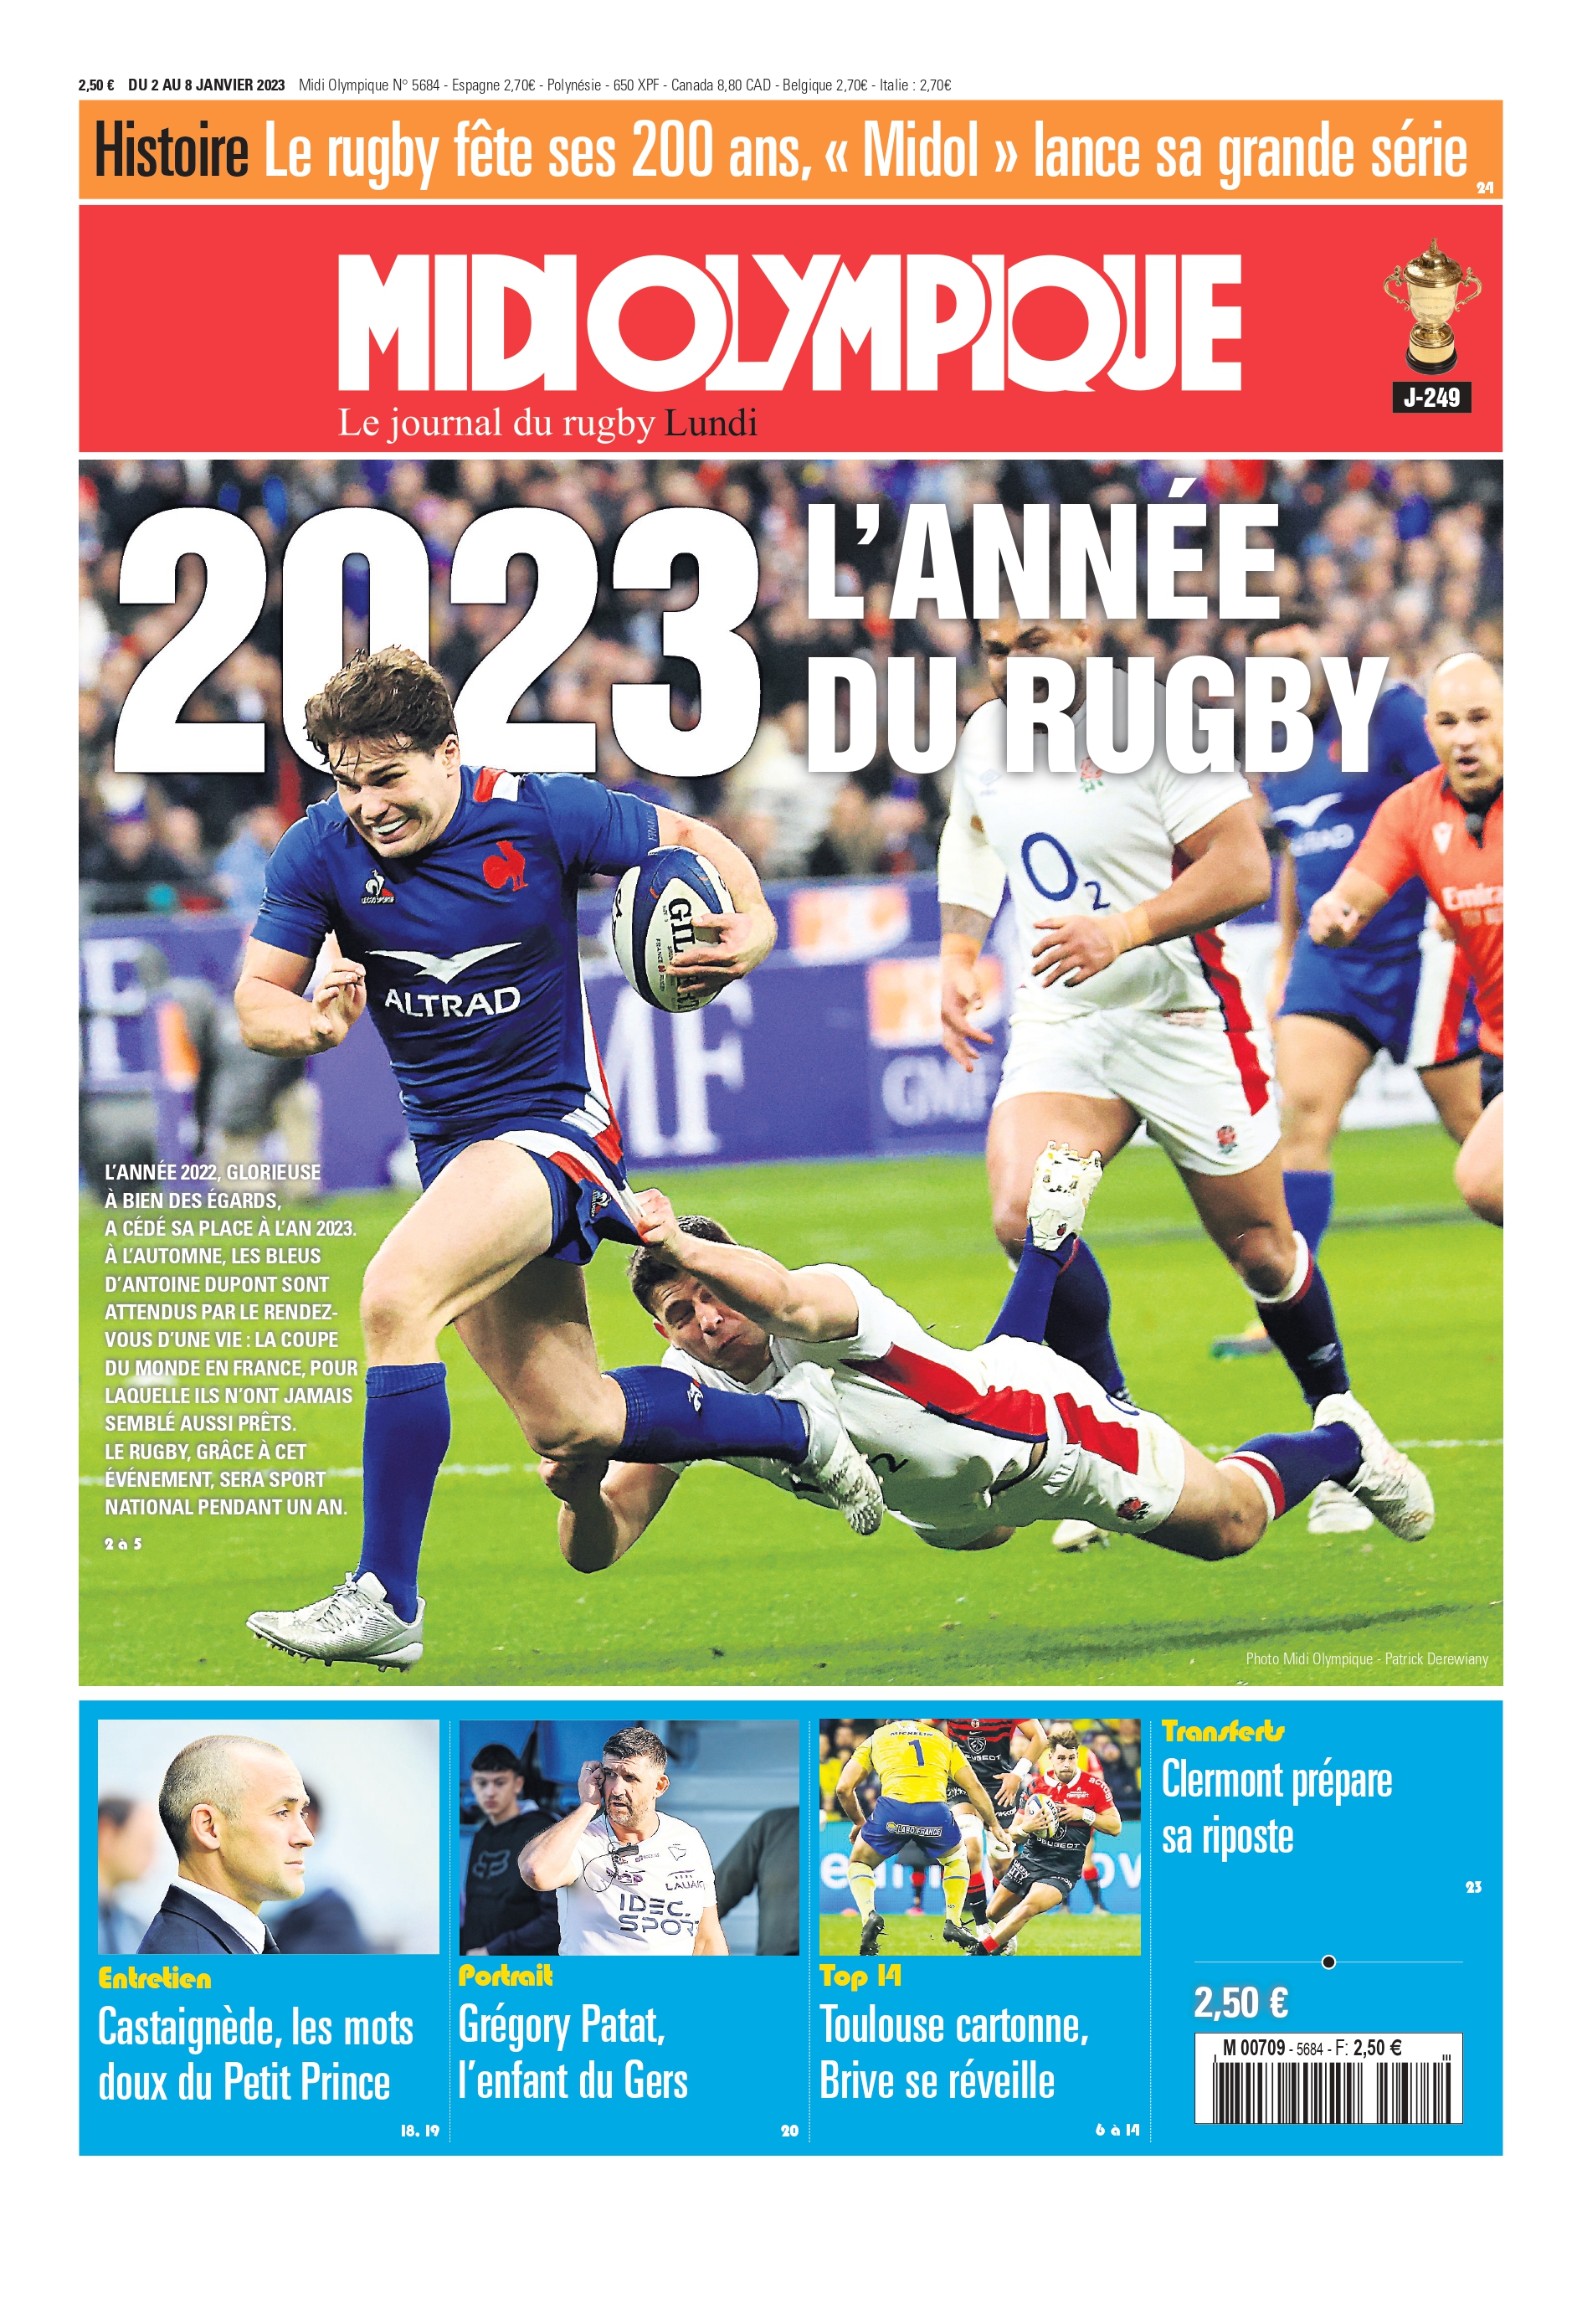 Midi Olympique on X: "2023 l'année du rugby en Une de Midi Olympique ! 🗞️  Votre journal > https://t.co/fwthVg357c https://t.co/IVpRQg0Xu4" / X